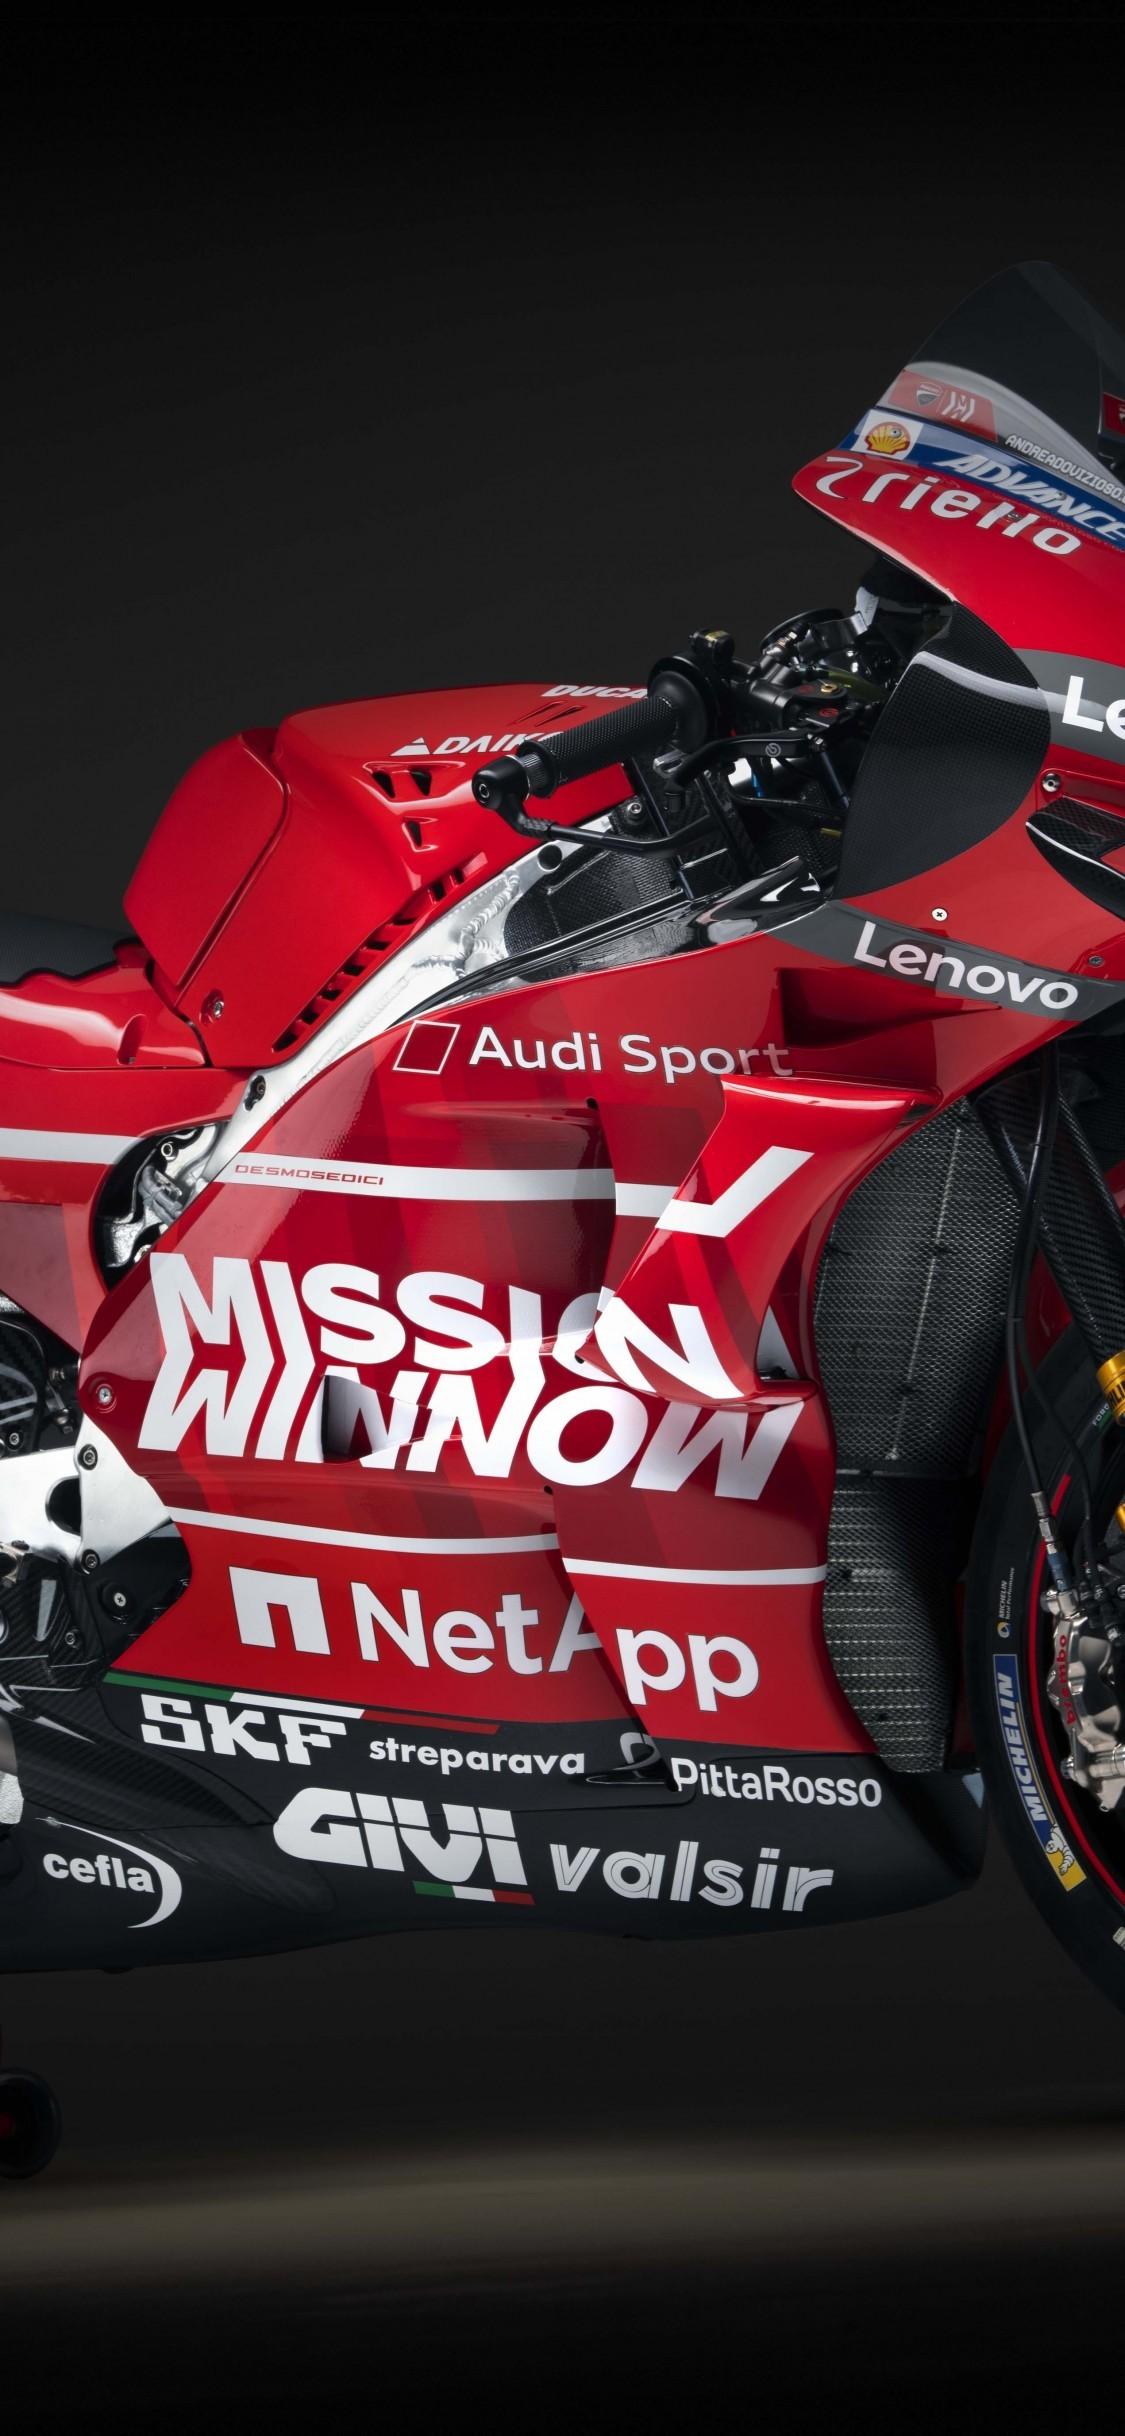 Download 1125x2436 Ducati Desmosedici Gp Red, Racing Bike, Sport